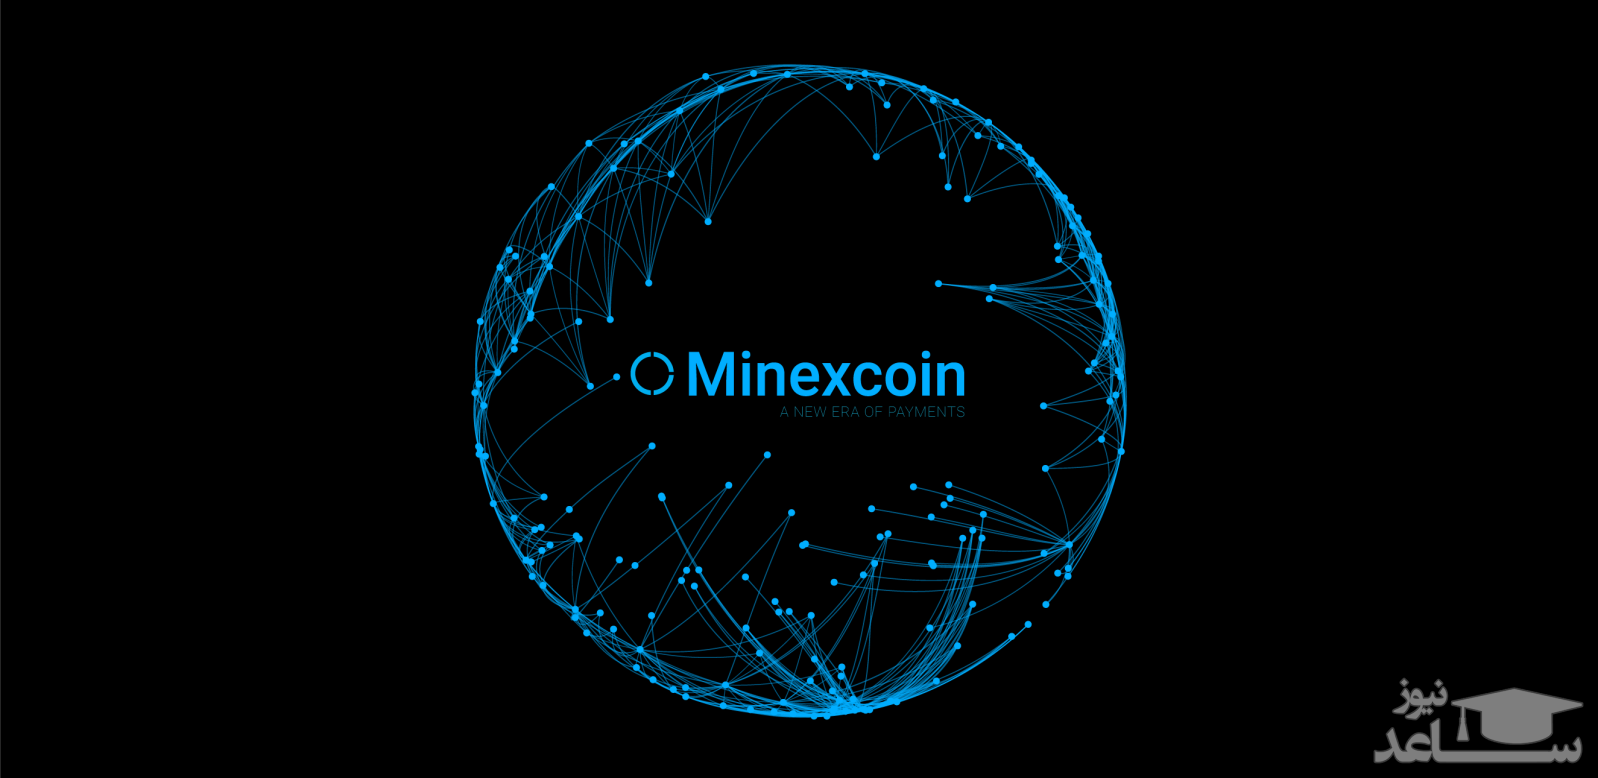 ارز دیجیتال ماینکس کوین MinexCoin  چگونه است؟